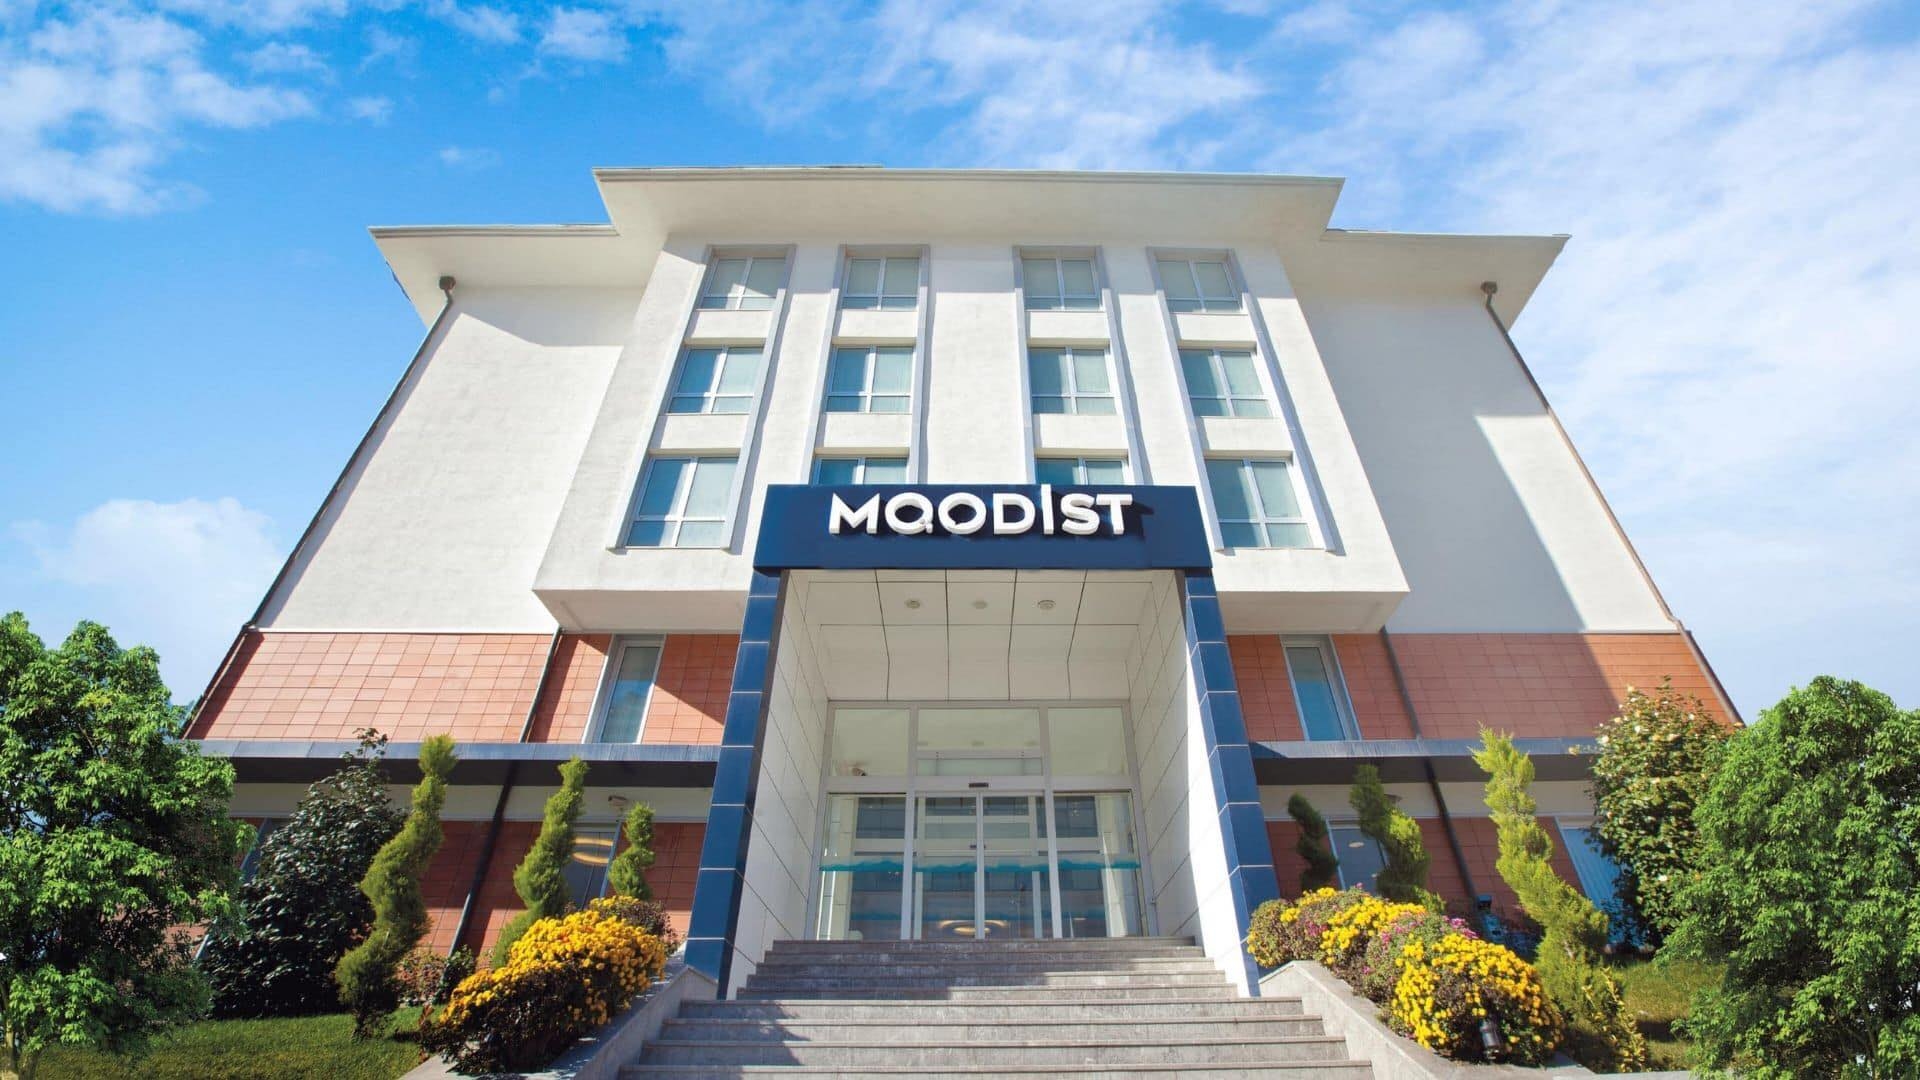 مستشفى موديست للطب النفسي والأعصاب في إسطنبول من أبرز مراكز العلاج النفسي في تركيا